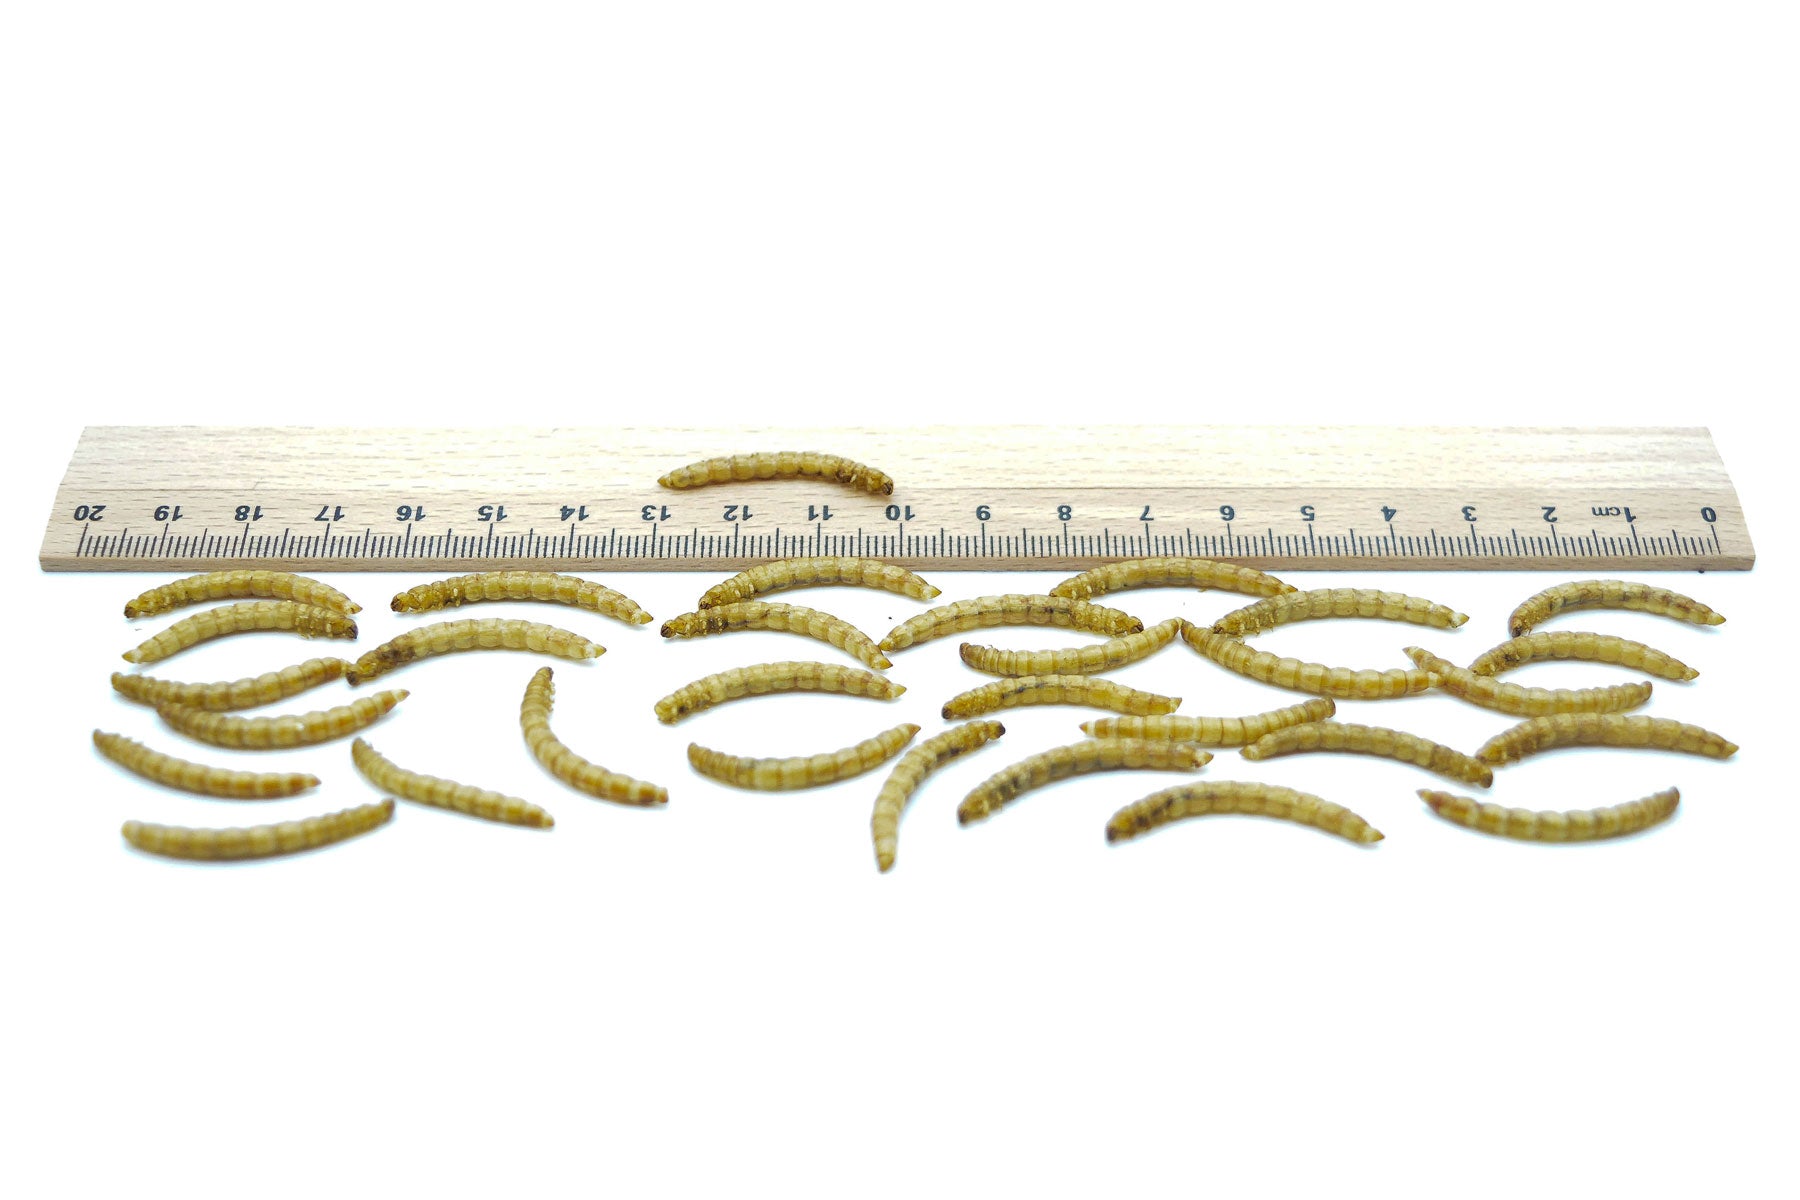 Mehlwürmer getrocknet 0,2 - 20 kg